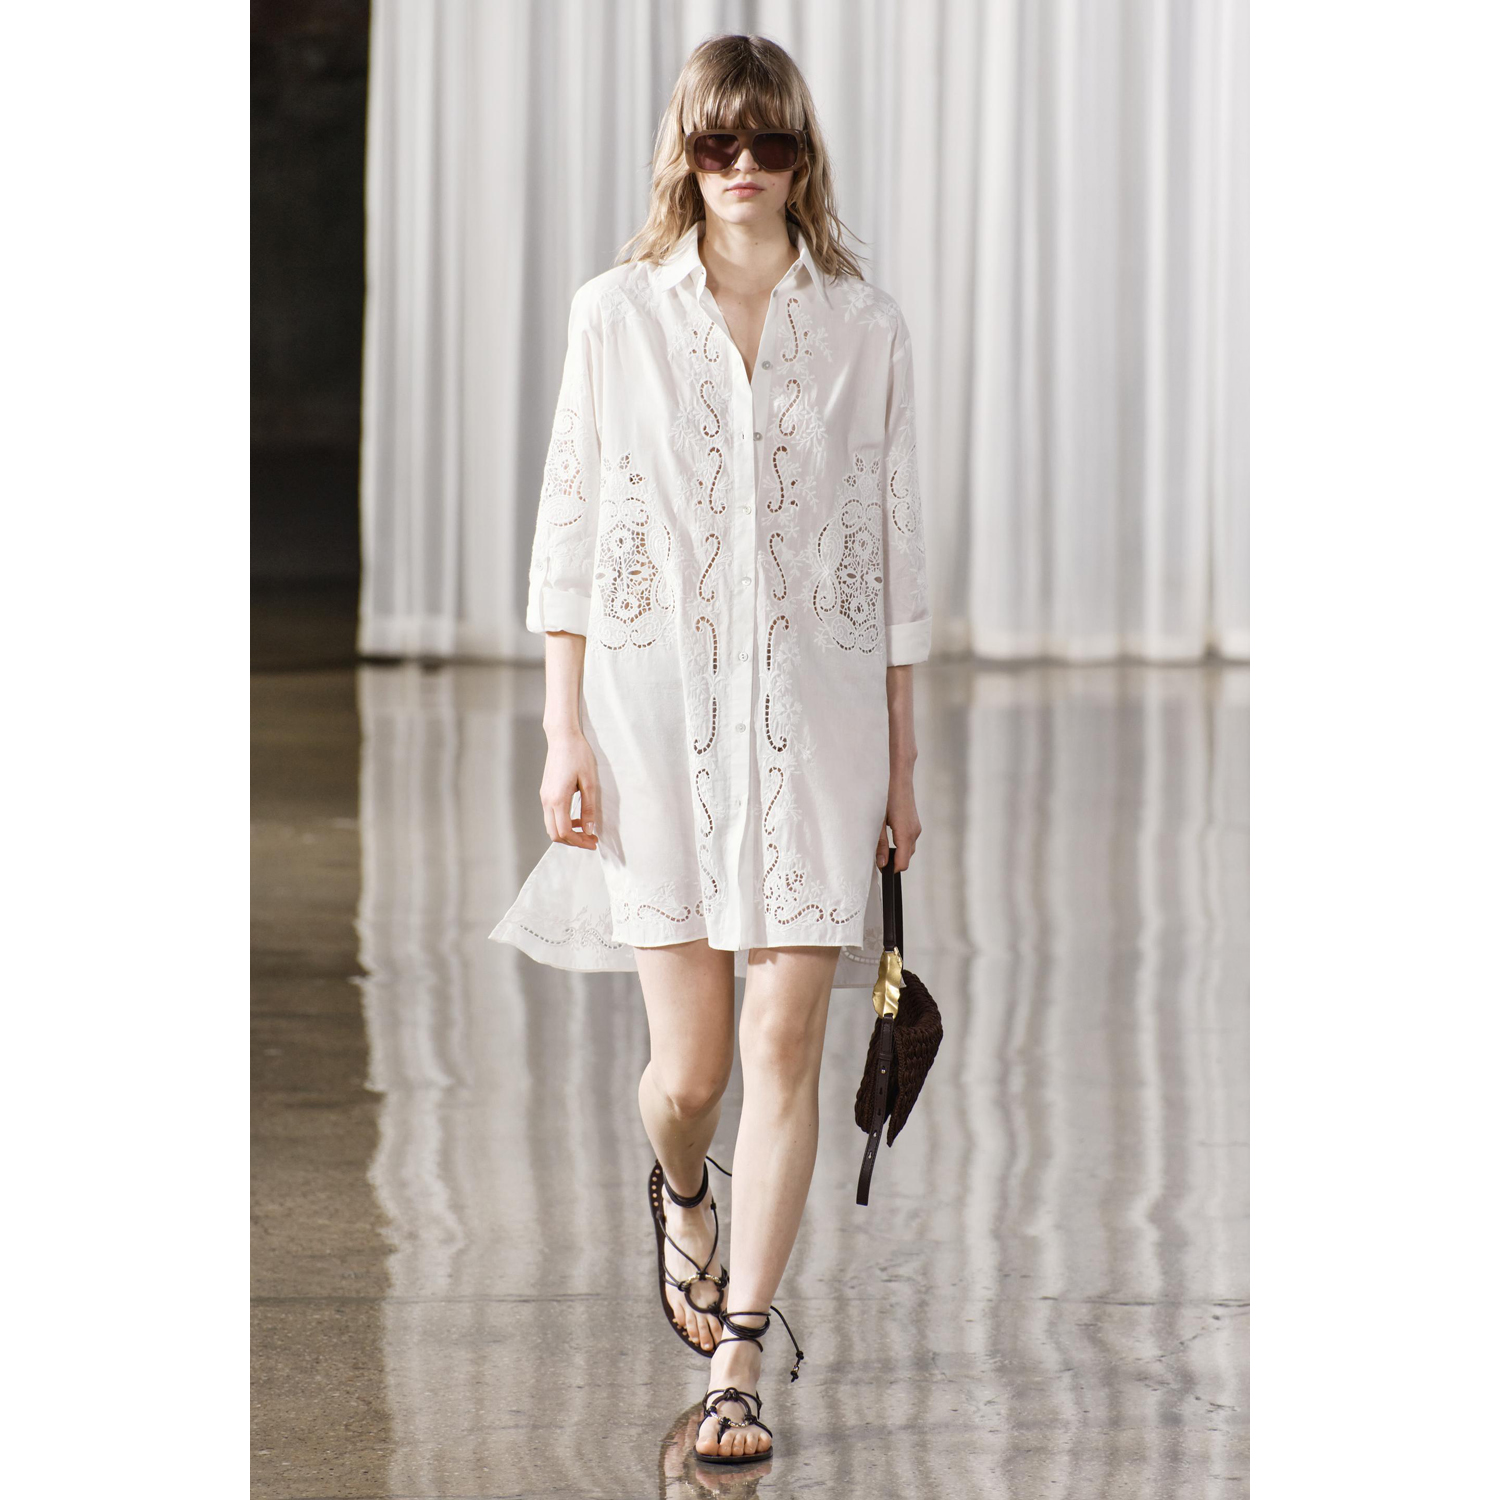 Рубашка Zara ZW Collection Embroidered Oversize, белый рубашка zara zw collection 100% ruffled ramie белый